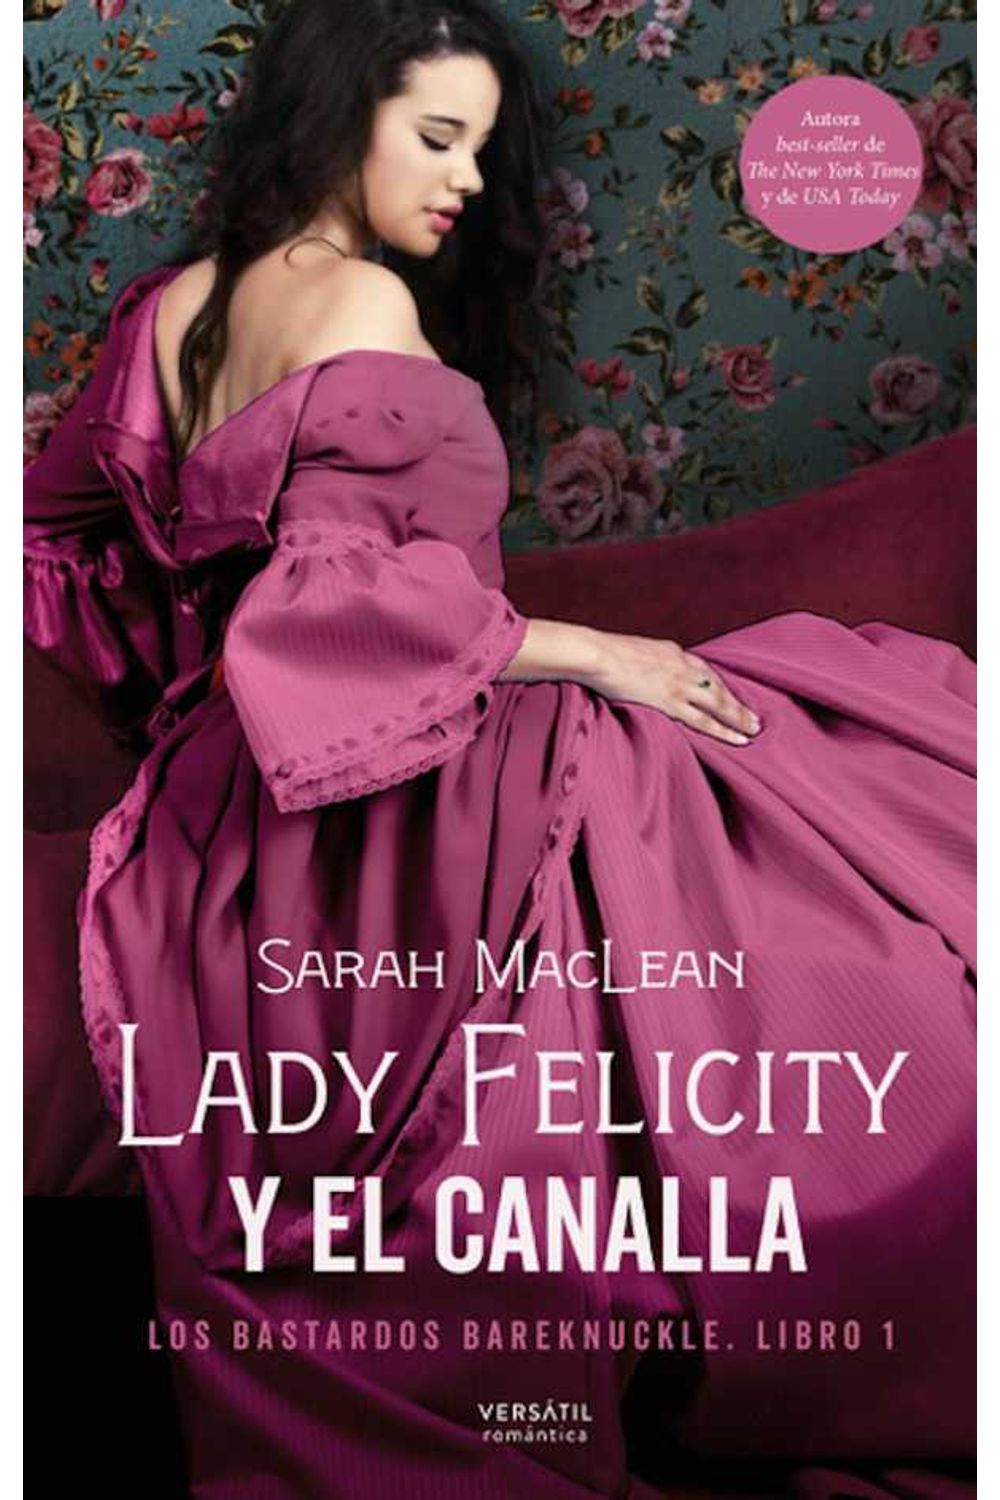 bw-lady-felicity-y-el-canalla-versatil-ediciones-9788417451967